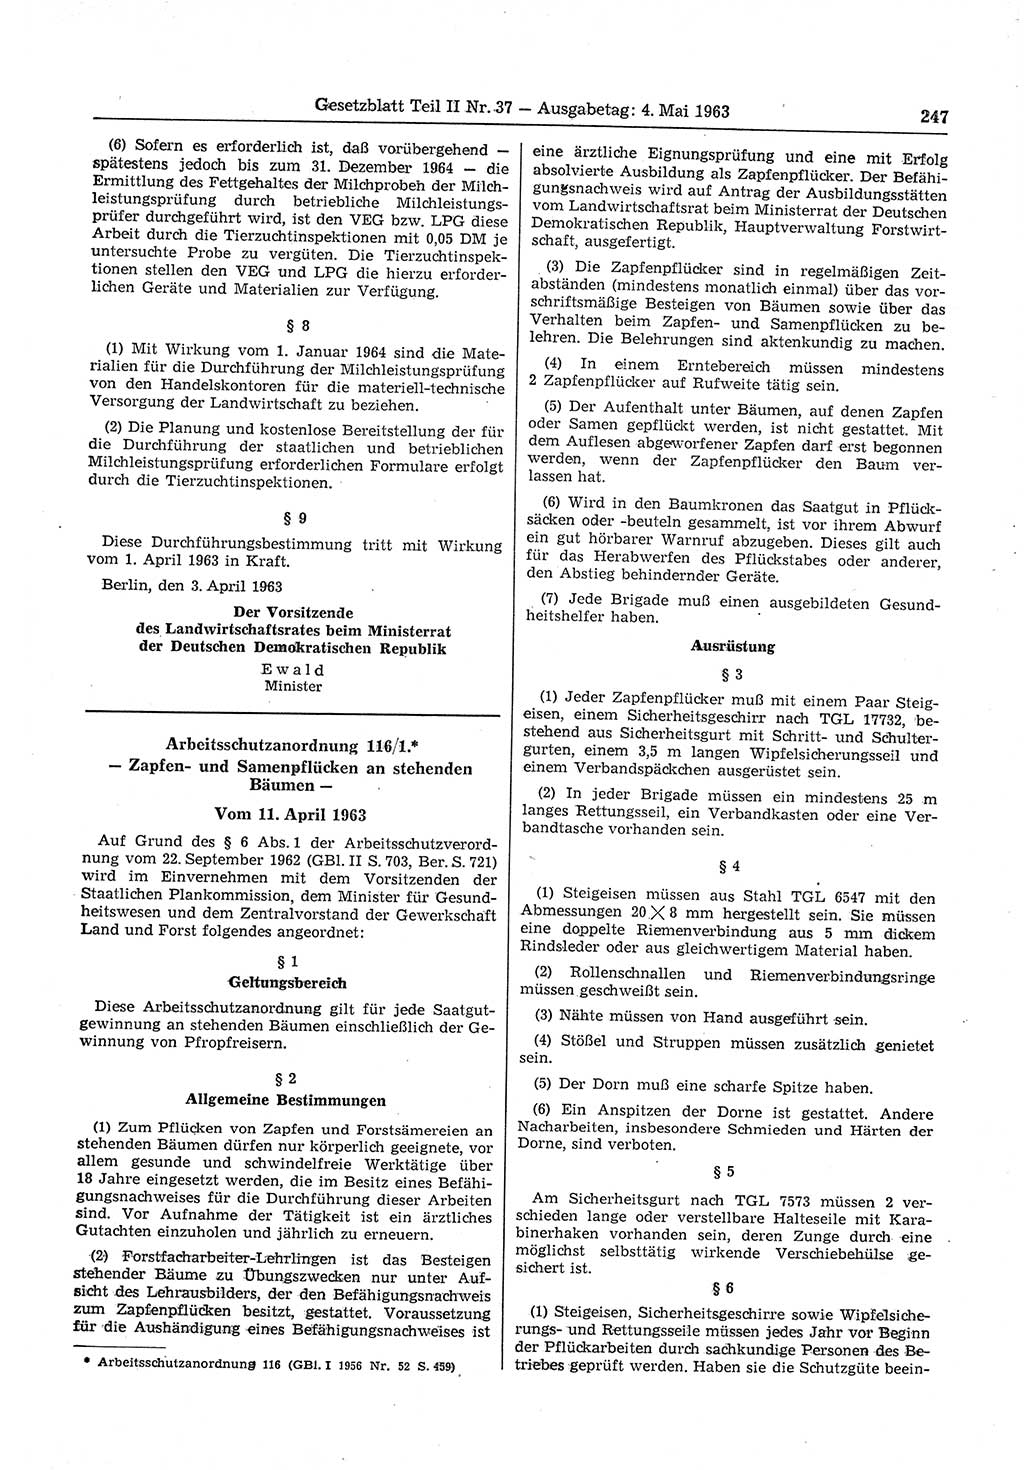 Gesetzblatt (GBl.) der Deutschen Demokratischen Republik (DDR) Teil ⅠⅠ 1963, Seite 247 (GBl. DDR ⅠⅠ 1963, S. 247)